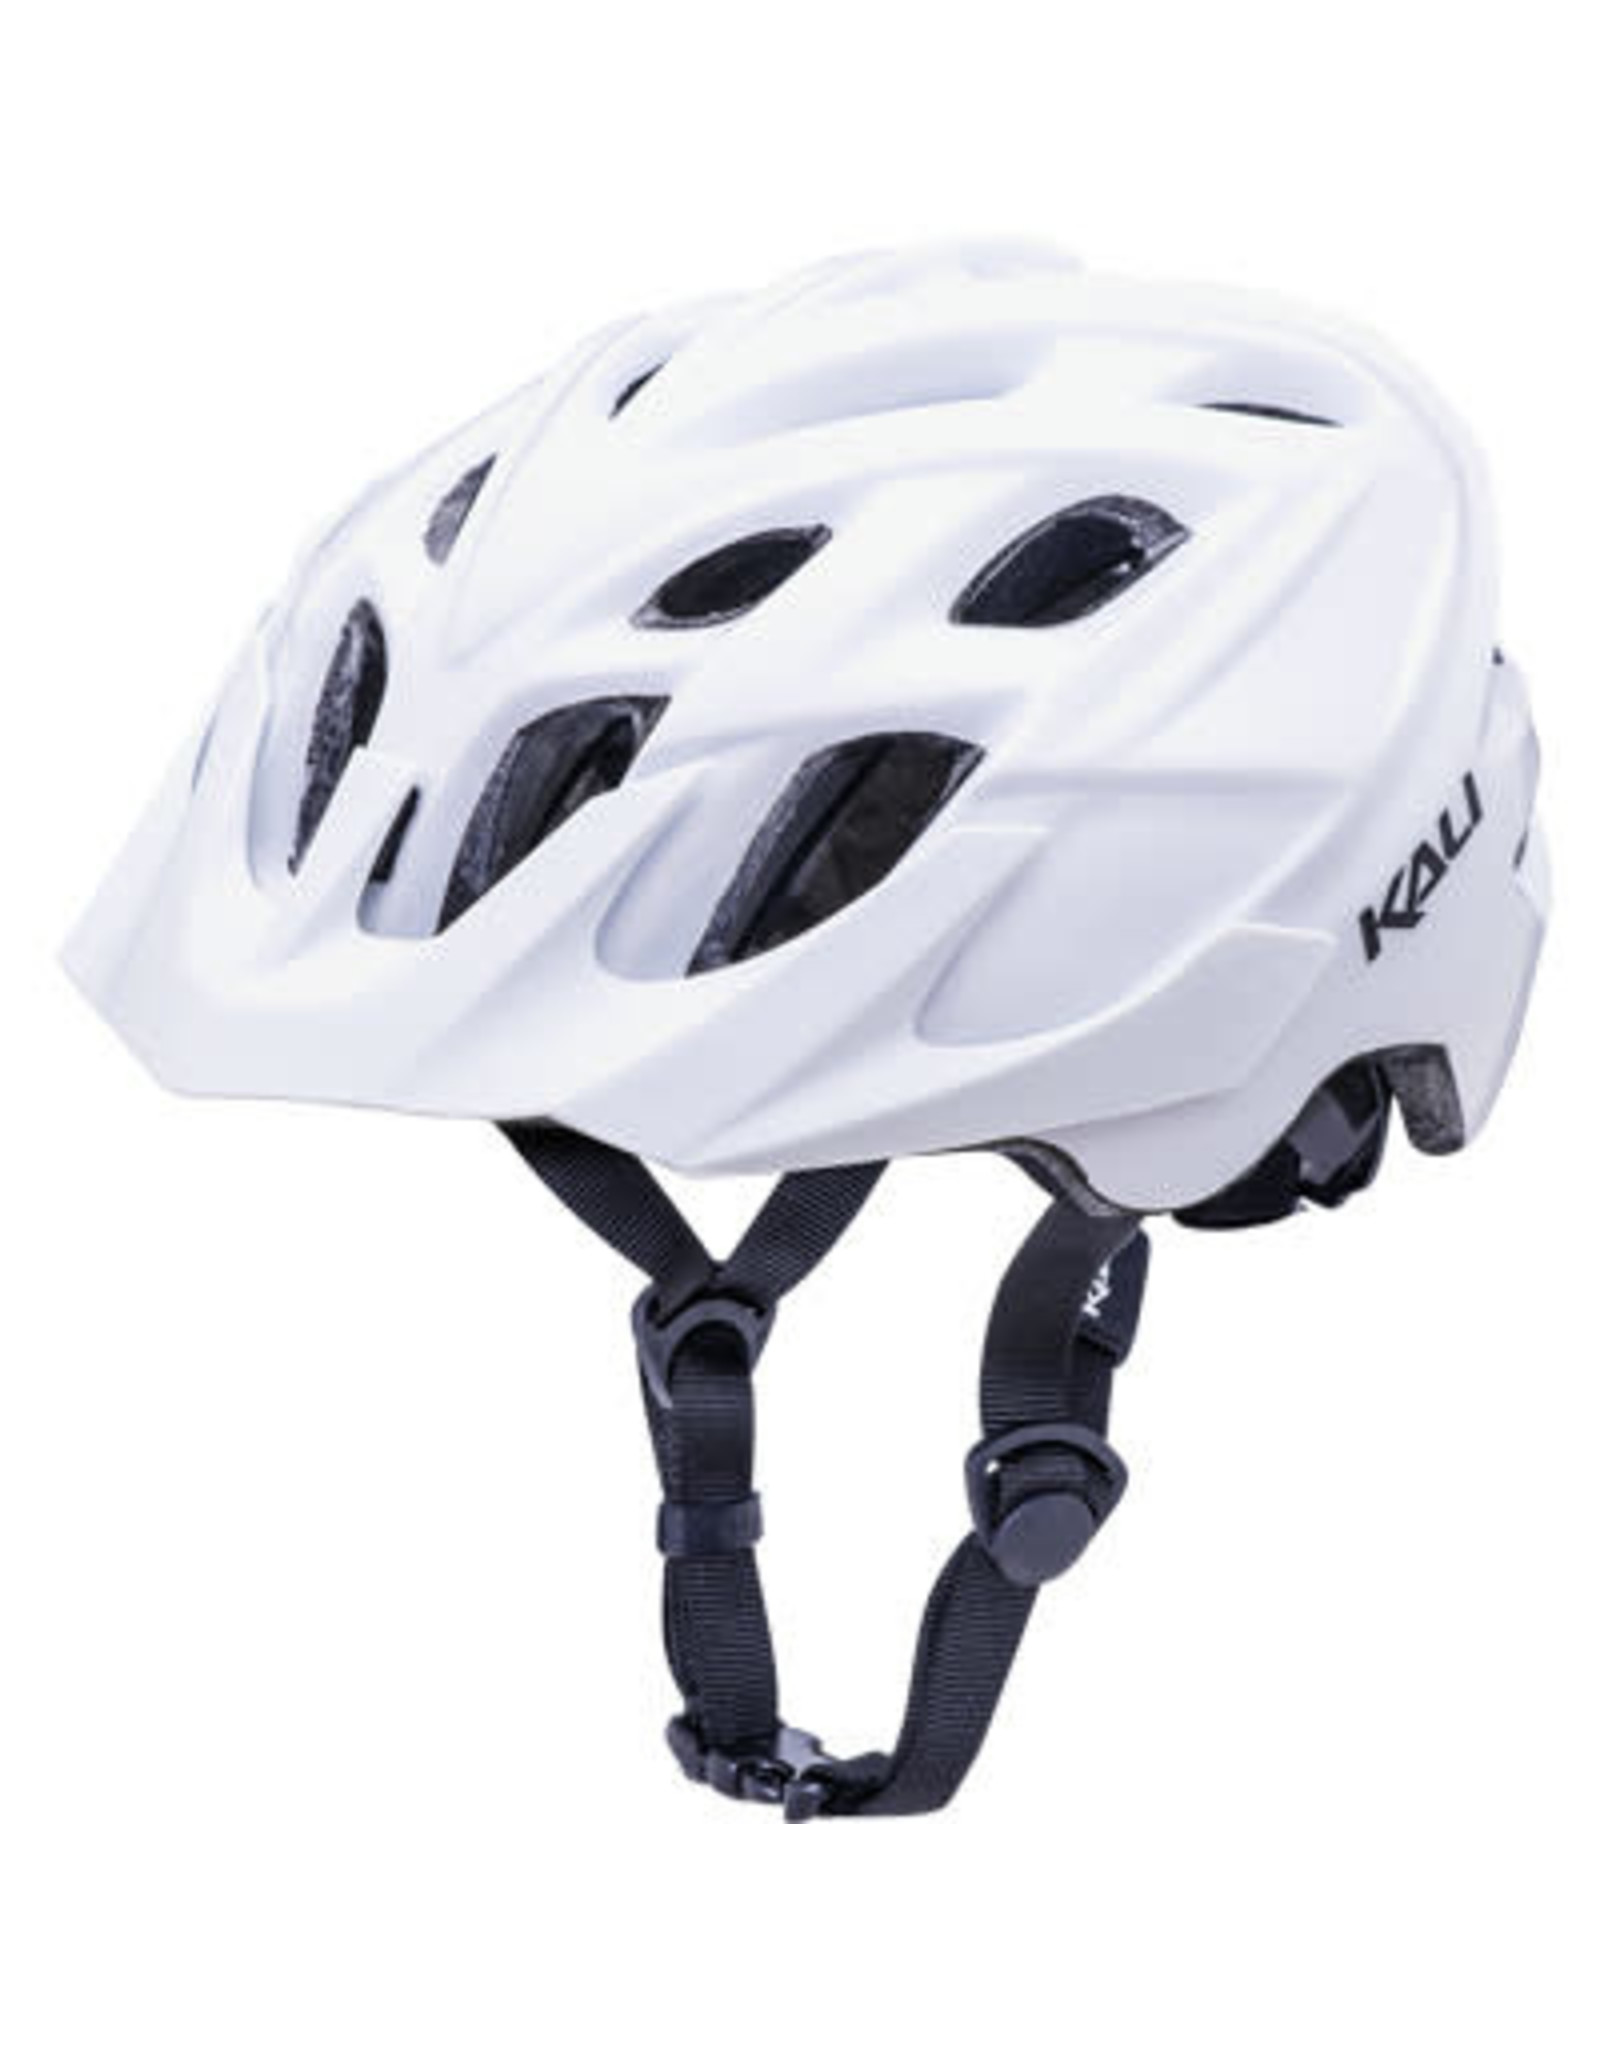 Helmet KALI,CHAKRA SOLO Sm/Med SOLID WHITE